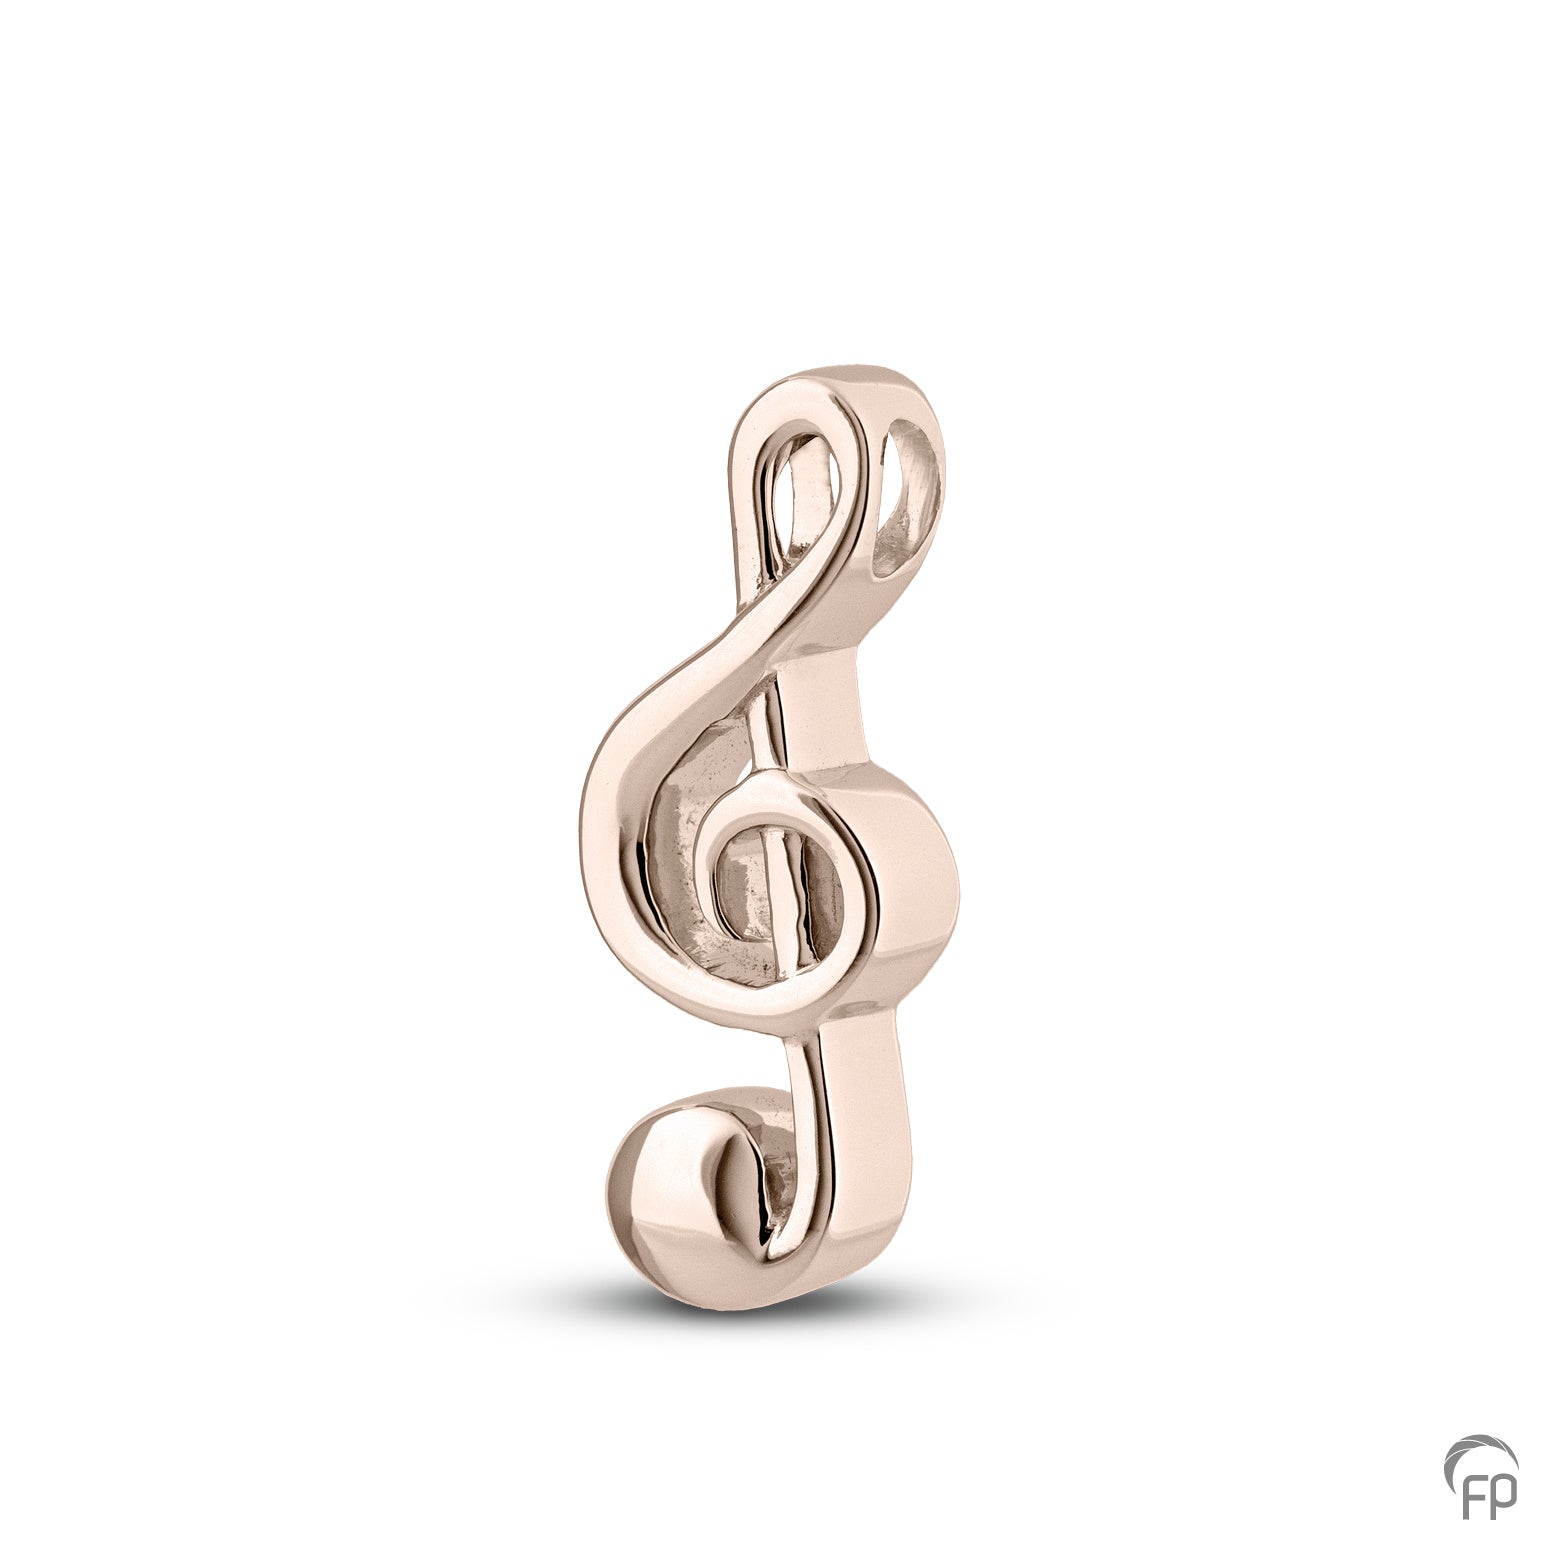 G-sleutel ashanger uit deze muziek collectie gedenksieraden is eenvoudig zelf te vullen en te bestellen in zilver, geelgoud en witgoud